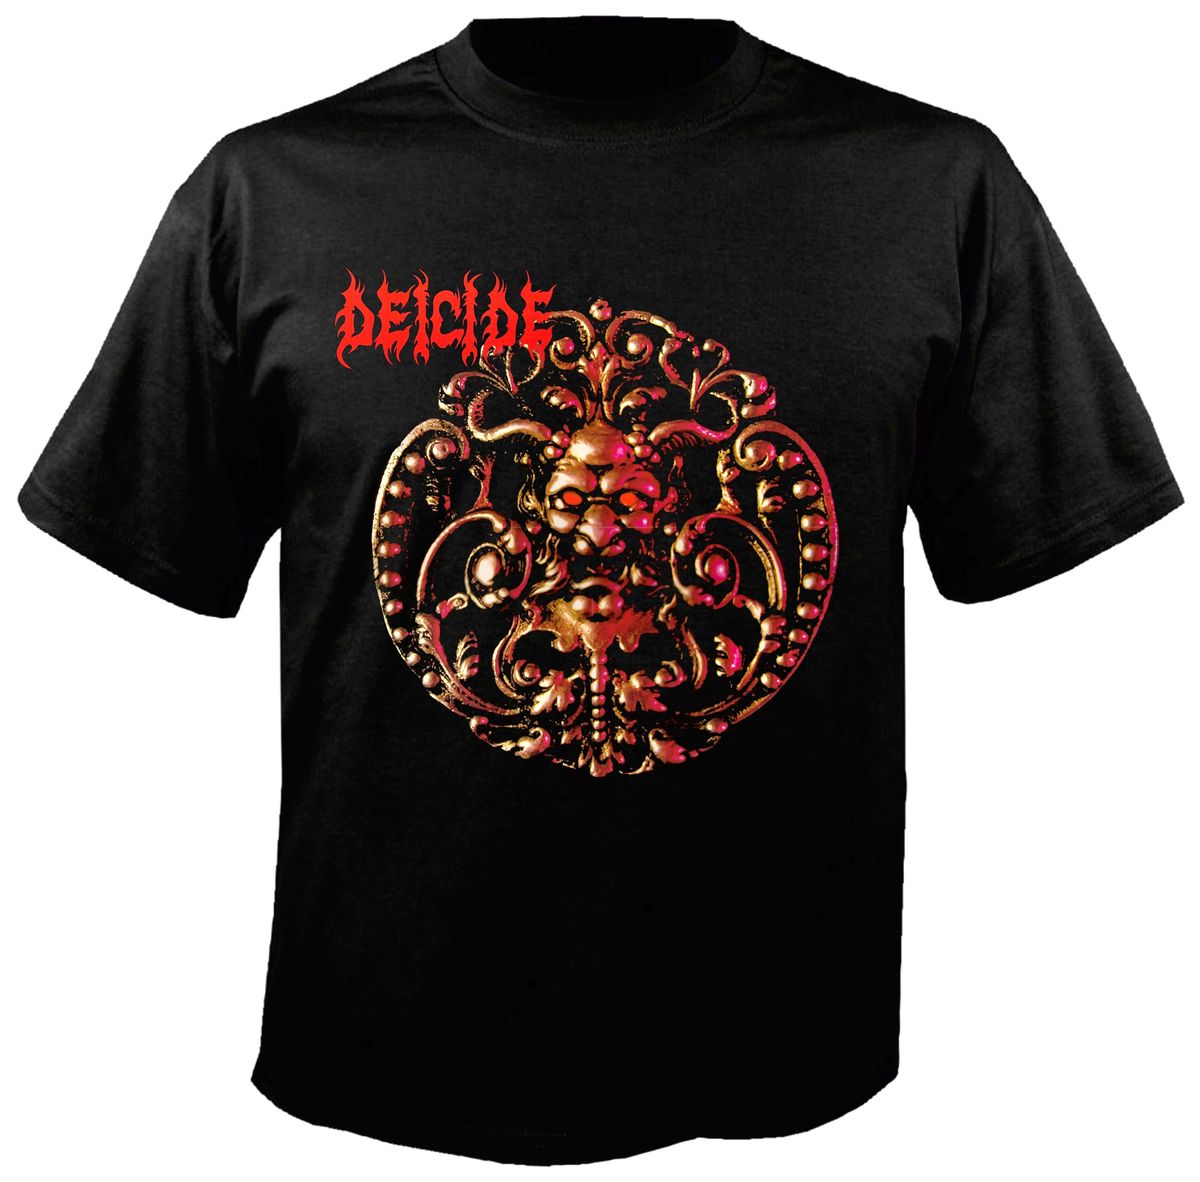 Deicide Band T-Shirt â Metal & Rock T-shirts and Accessories